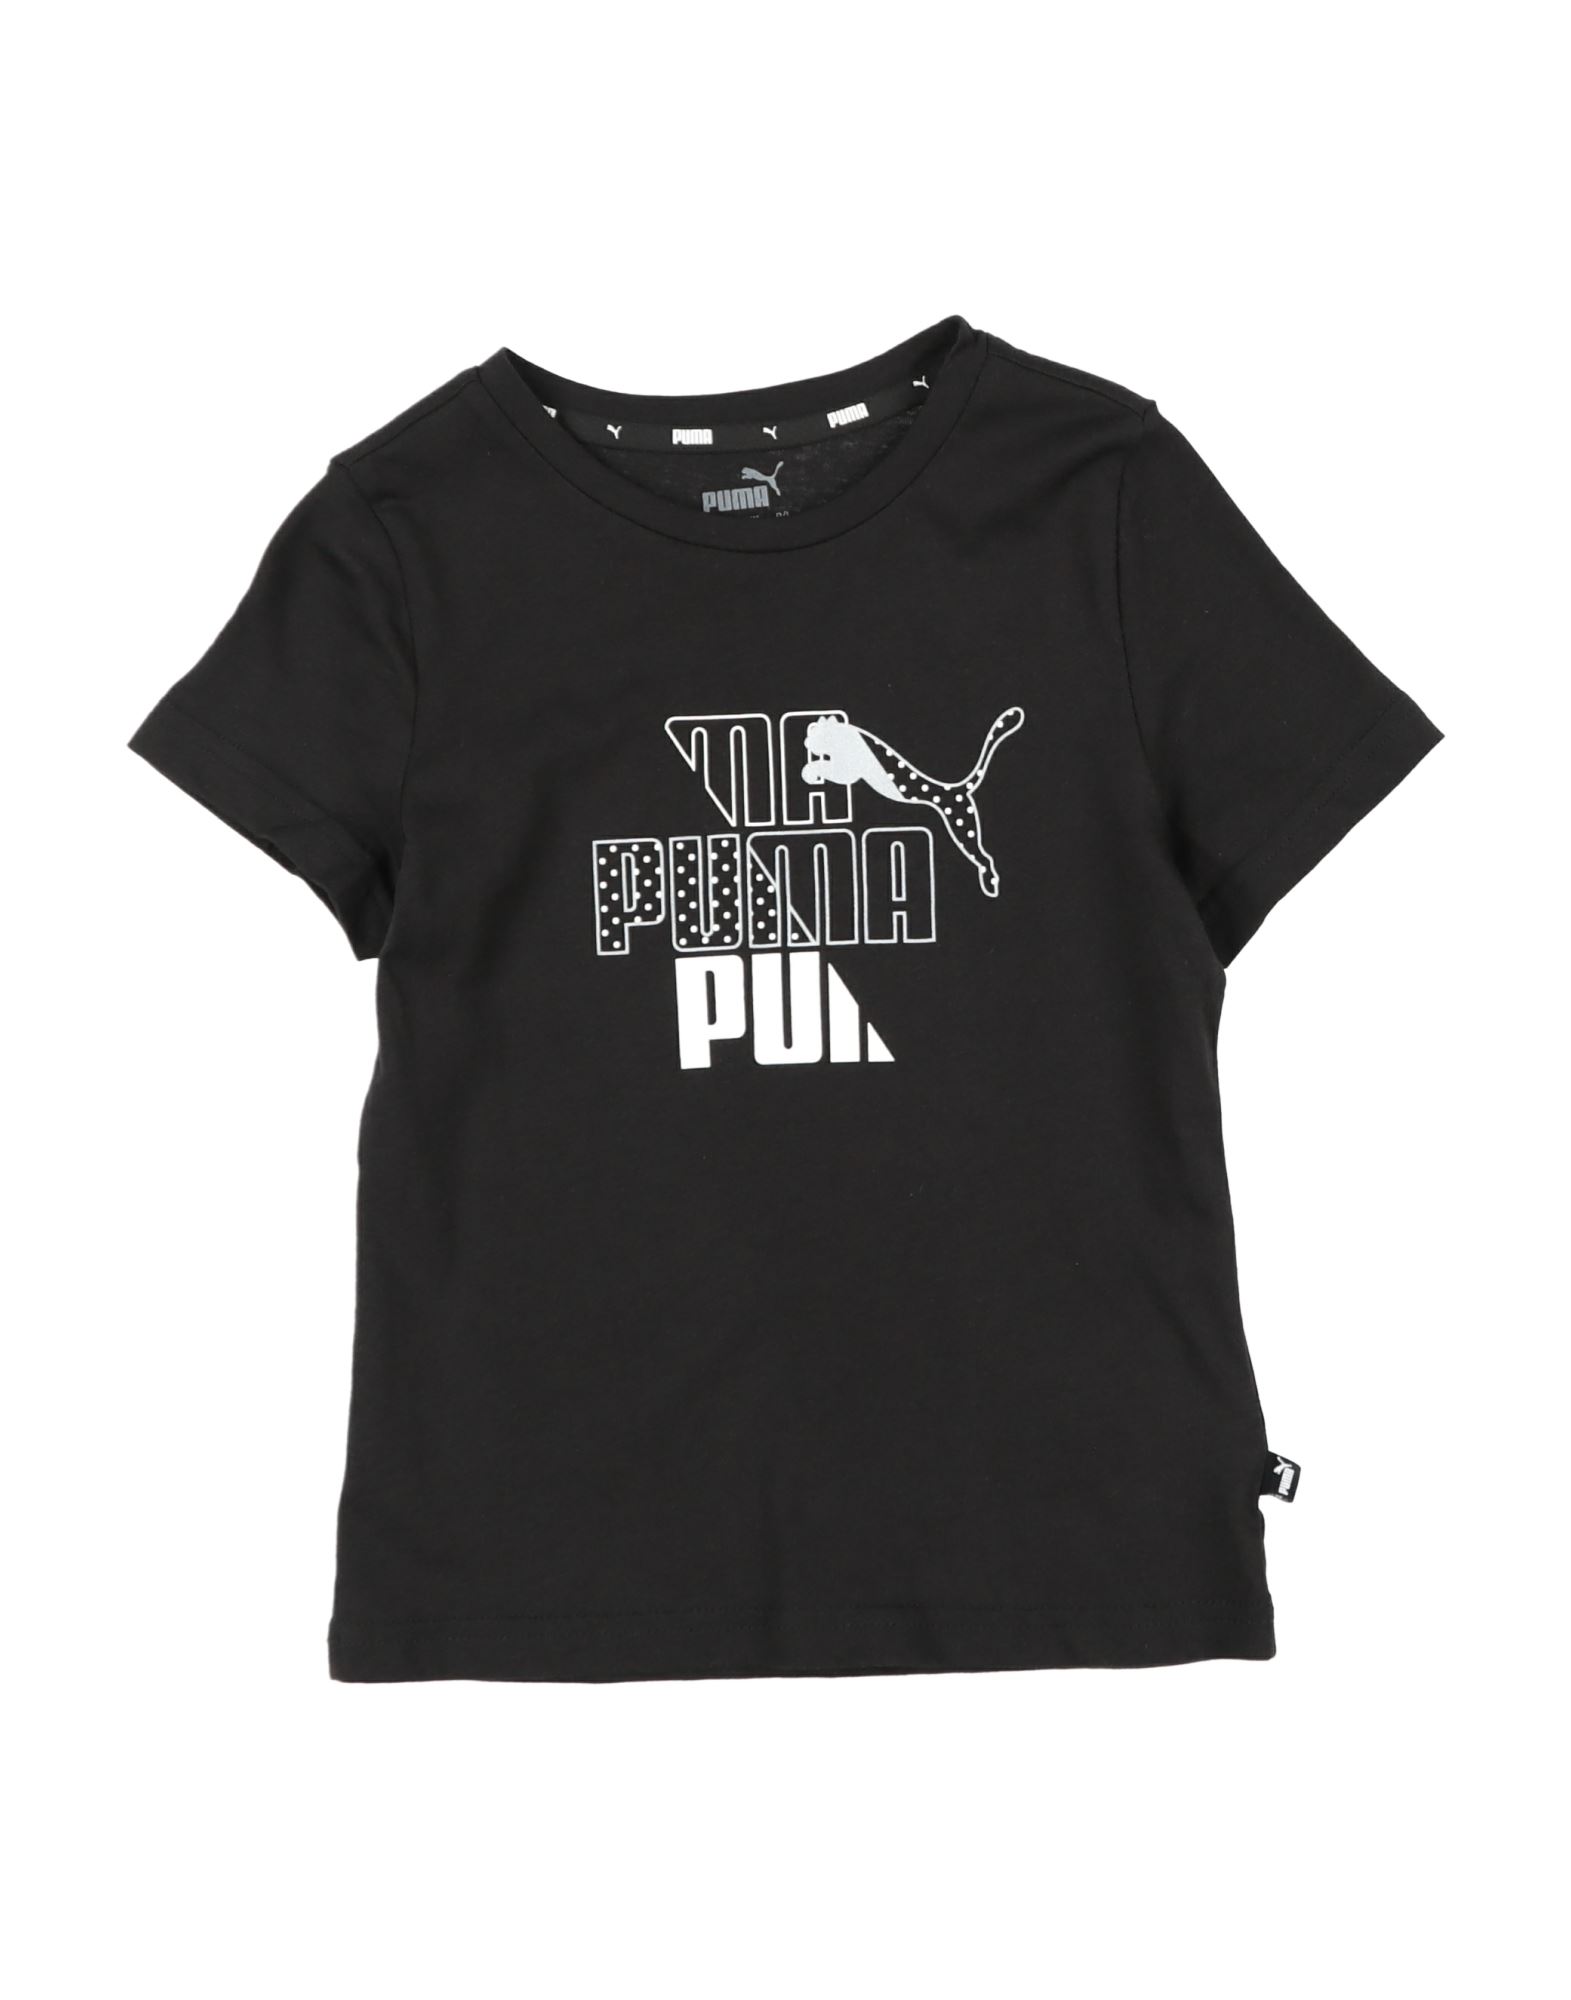 Puma Kids' T-shirts In Black